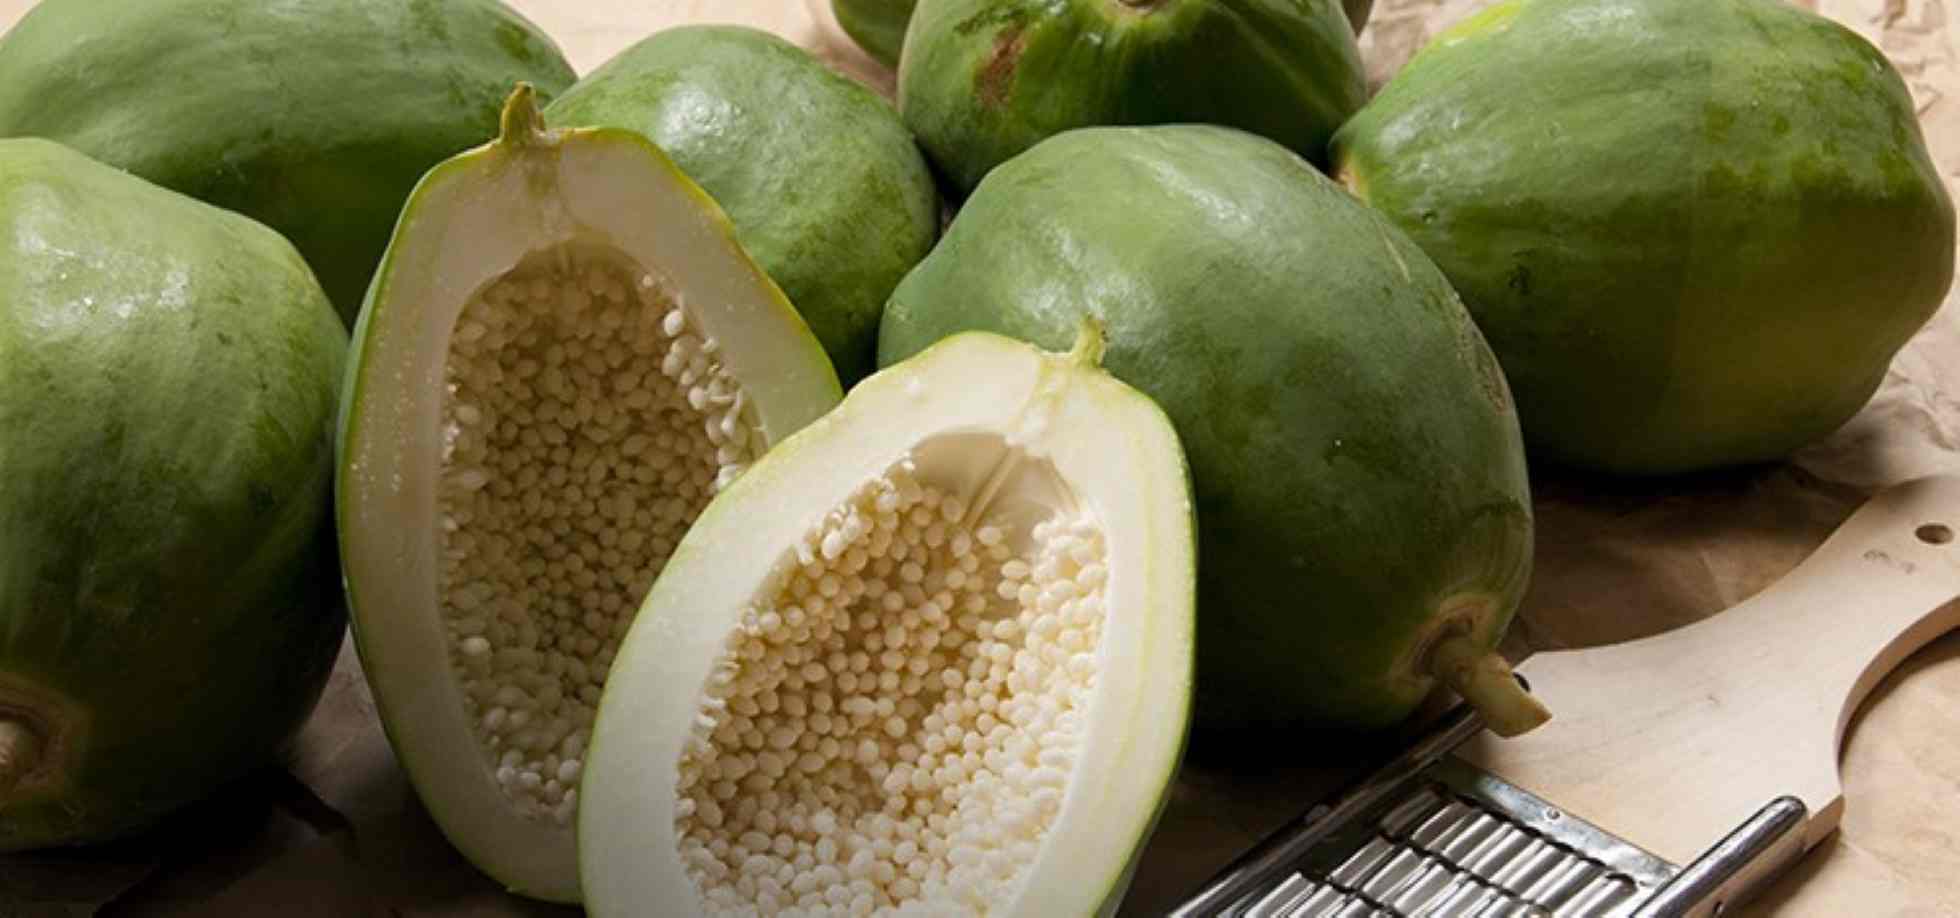 Altaflora papaya 20cpr: Scheda Tecnica del Parafarmaco